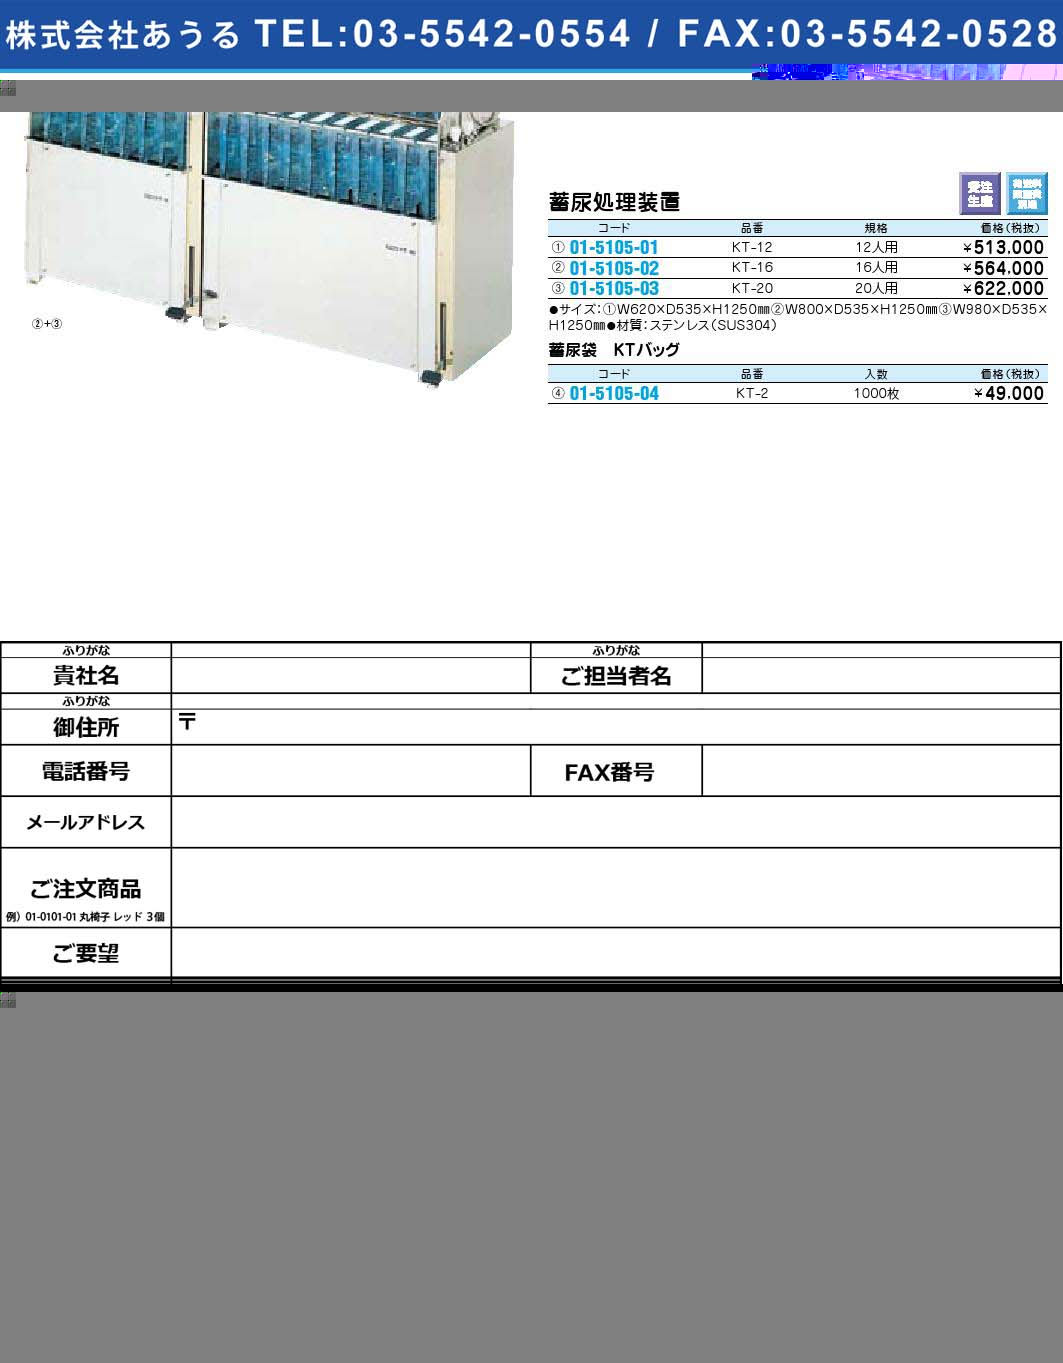 蓄尿処理装置 KT-12(01-5105-01)